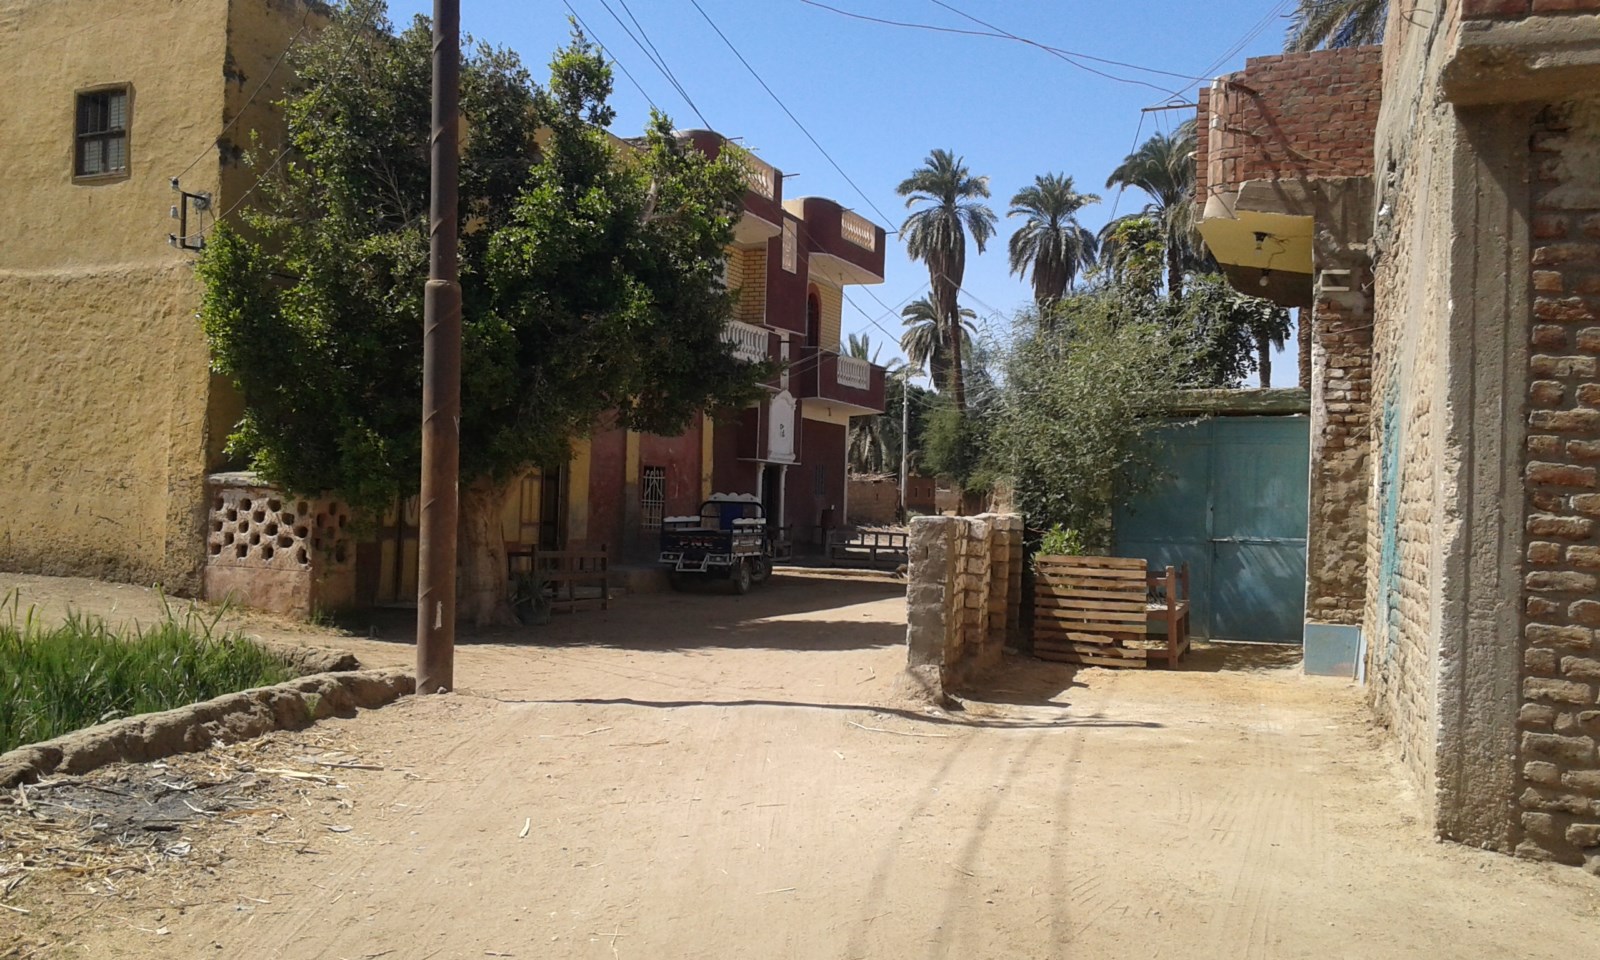 شوارع قرية خور أبو علي الجارى تطويرها ضمن مبادرة حياة كريمة (2)